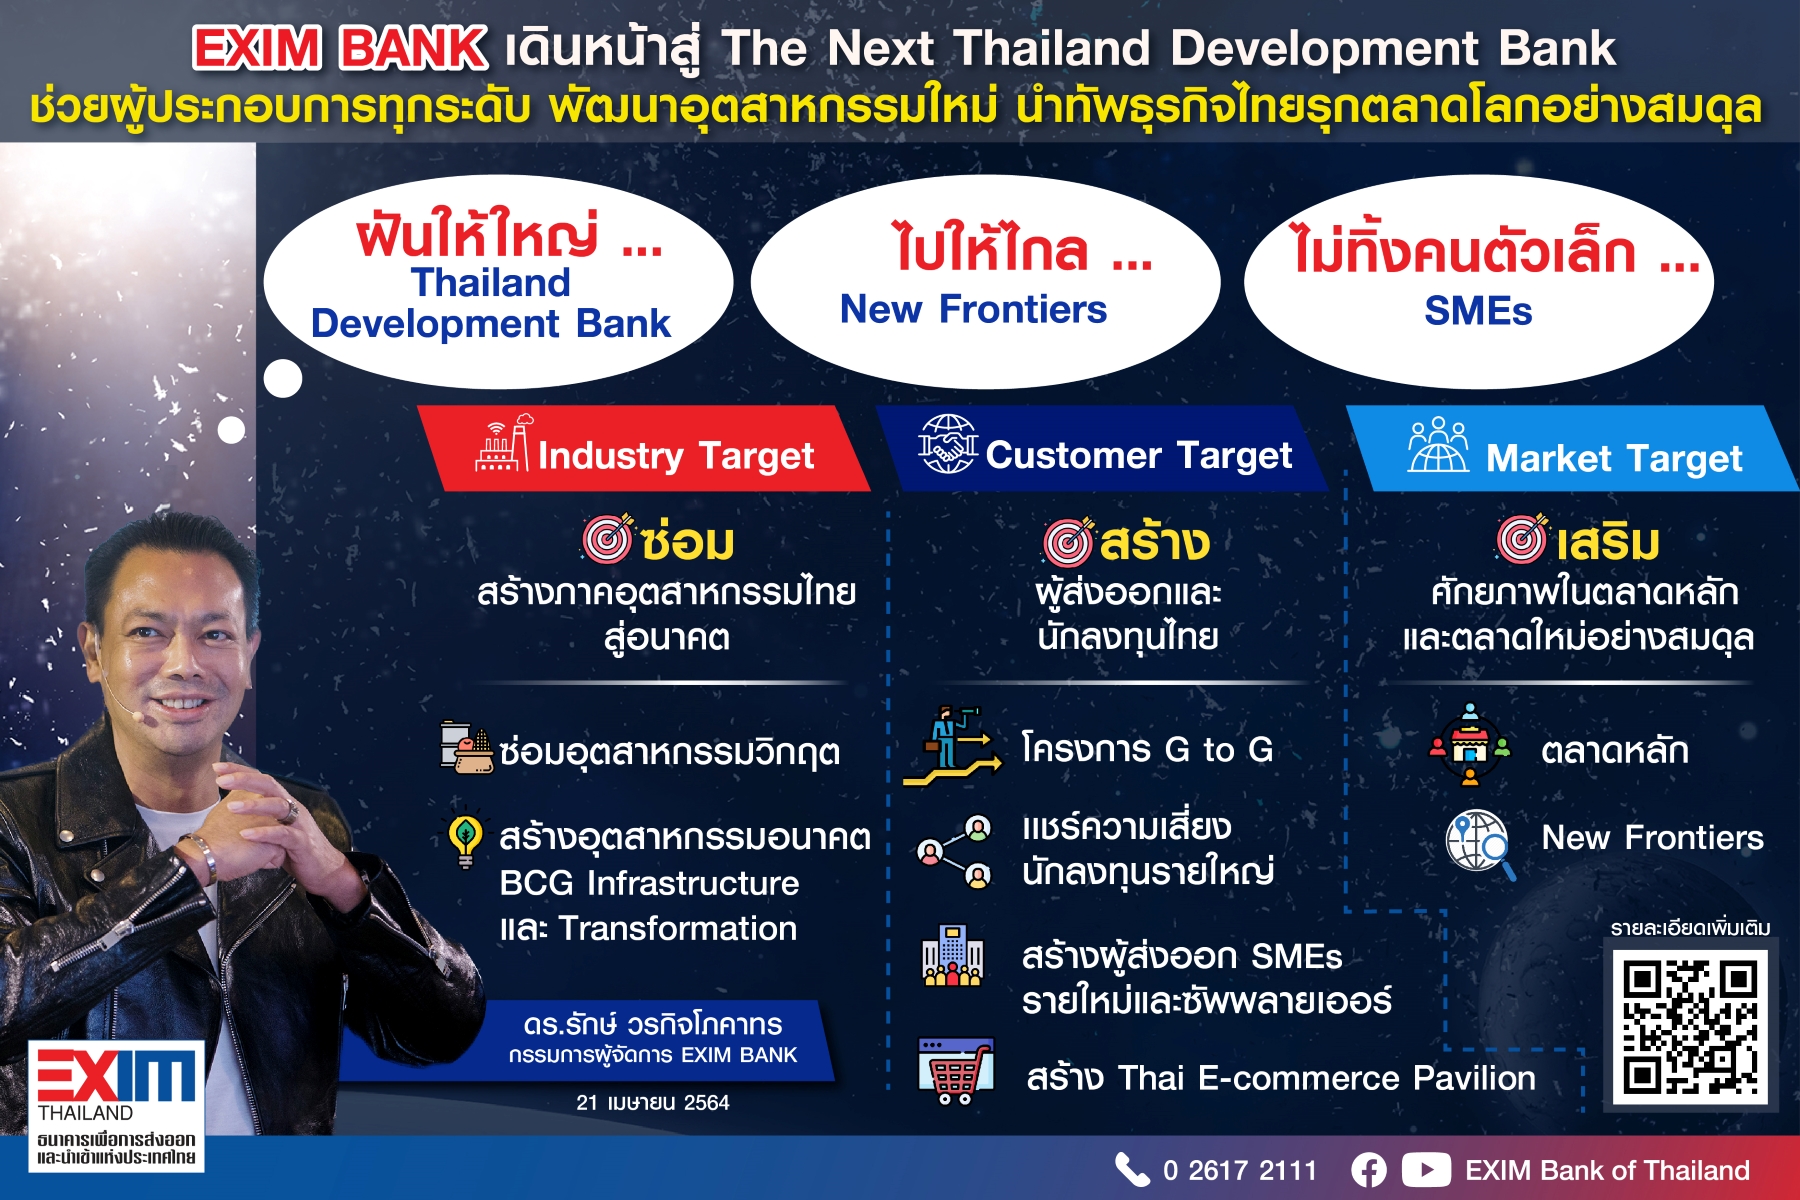 EXIM BANK พลิกโฉมสู่บทบาท “ธนาคารเพื่อการพัฒนาแห่งประเทศไทย” ช่วยผู้ประกอบการทุกระดับ พัฒนาอุตสาหกรรมใหม่ นำทัพธุรกิจไทยรุกตลาดโลกอย่างสมดุล